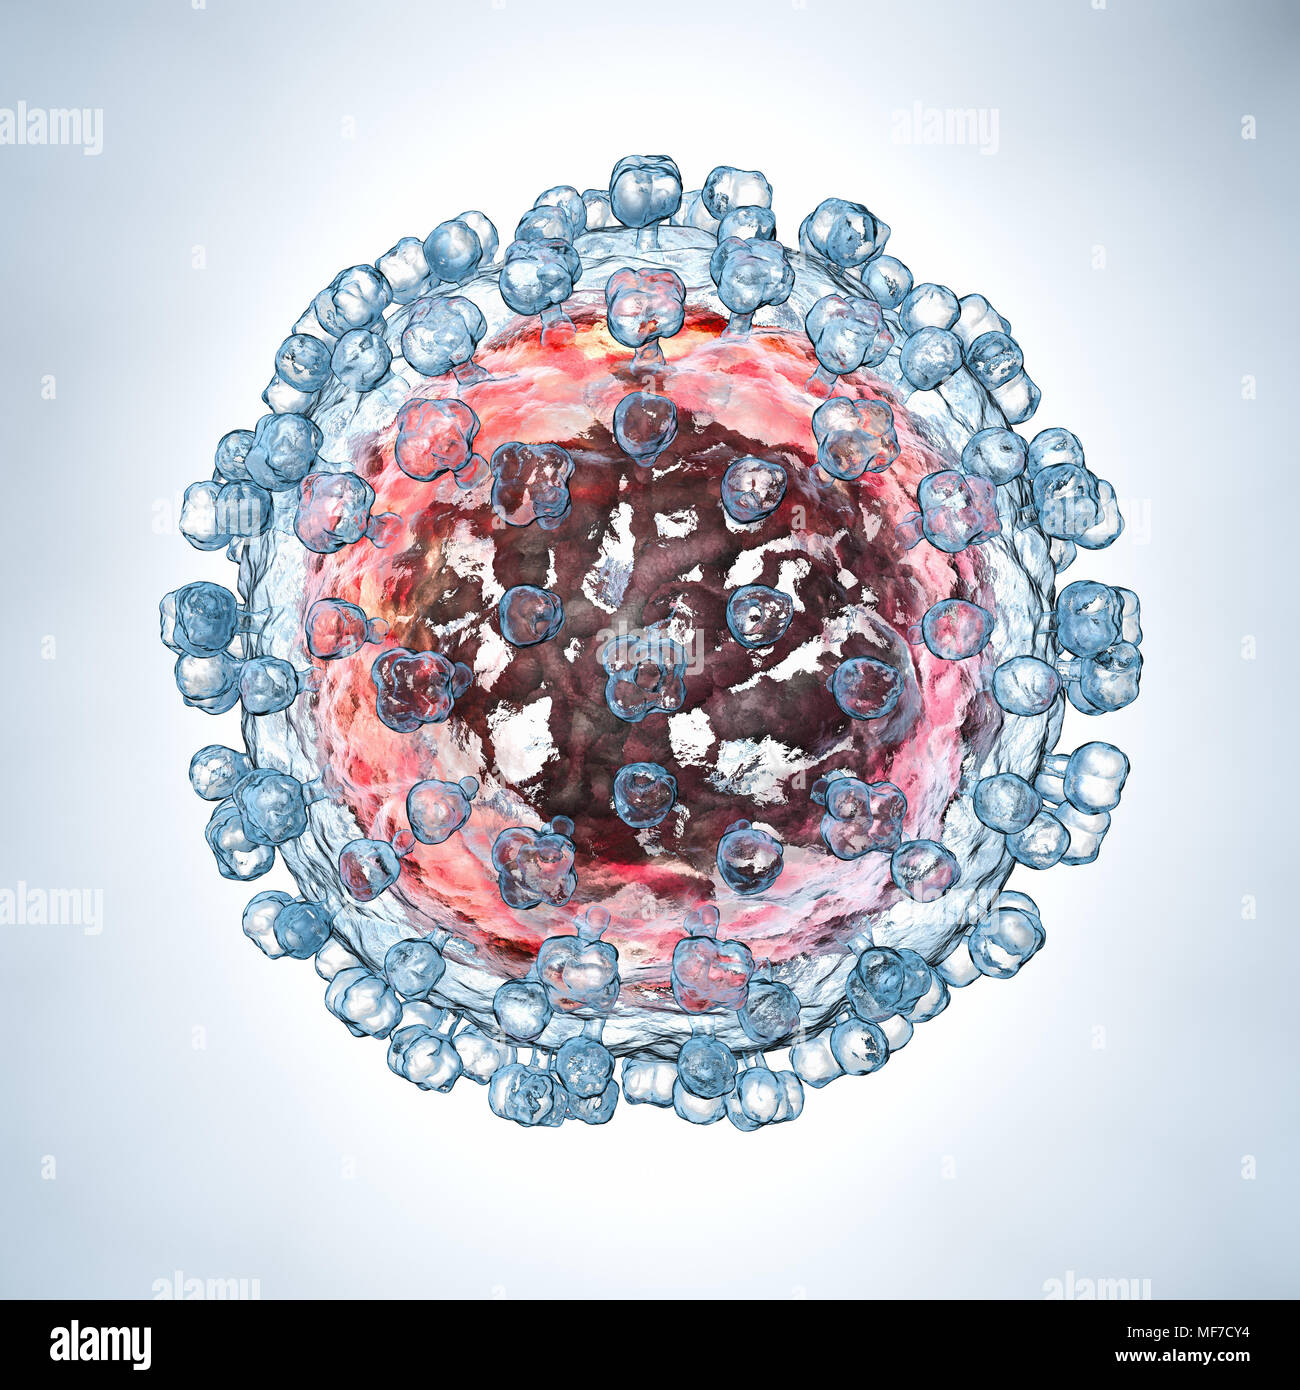 Hepatitis C virus model. 3D illustration Stock Photo